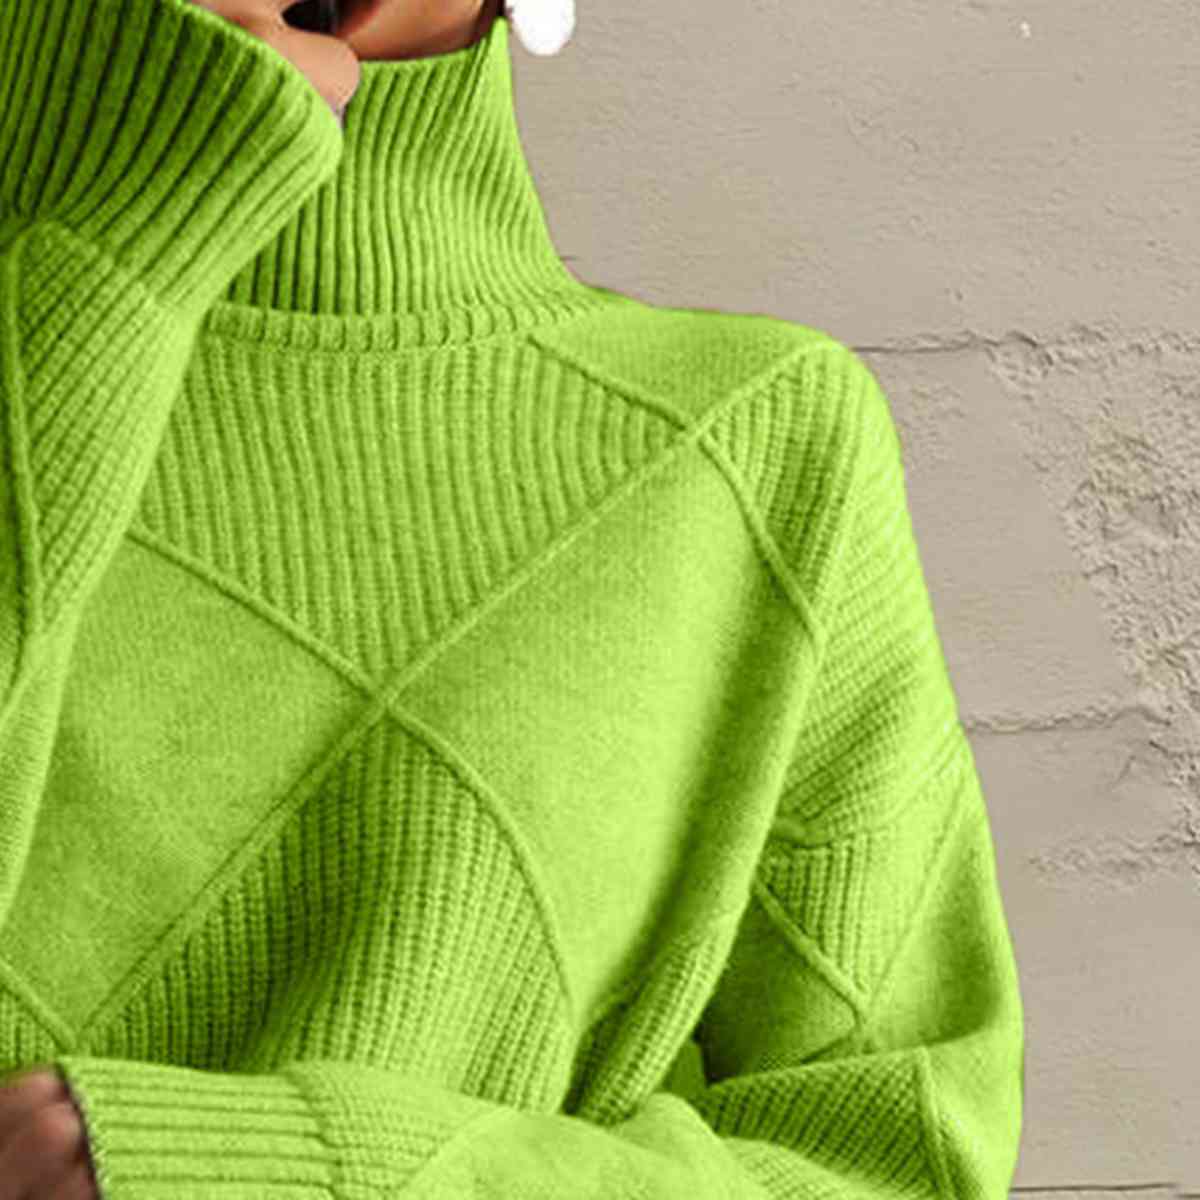 Dark Khaki Geometric Turtleneck Long Sleeve Sweater